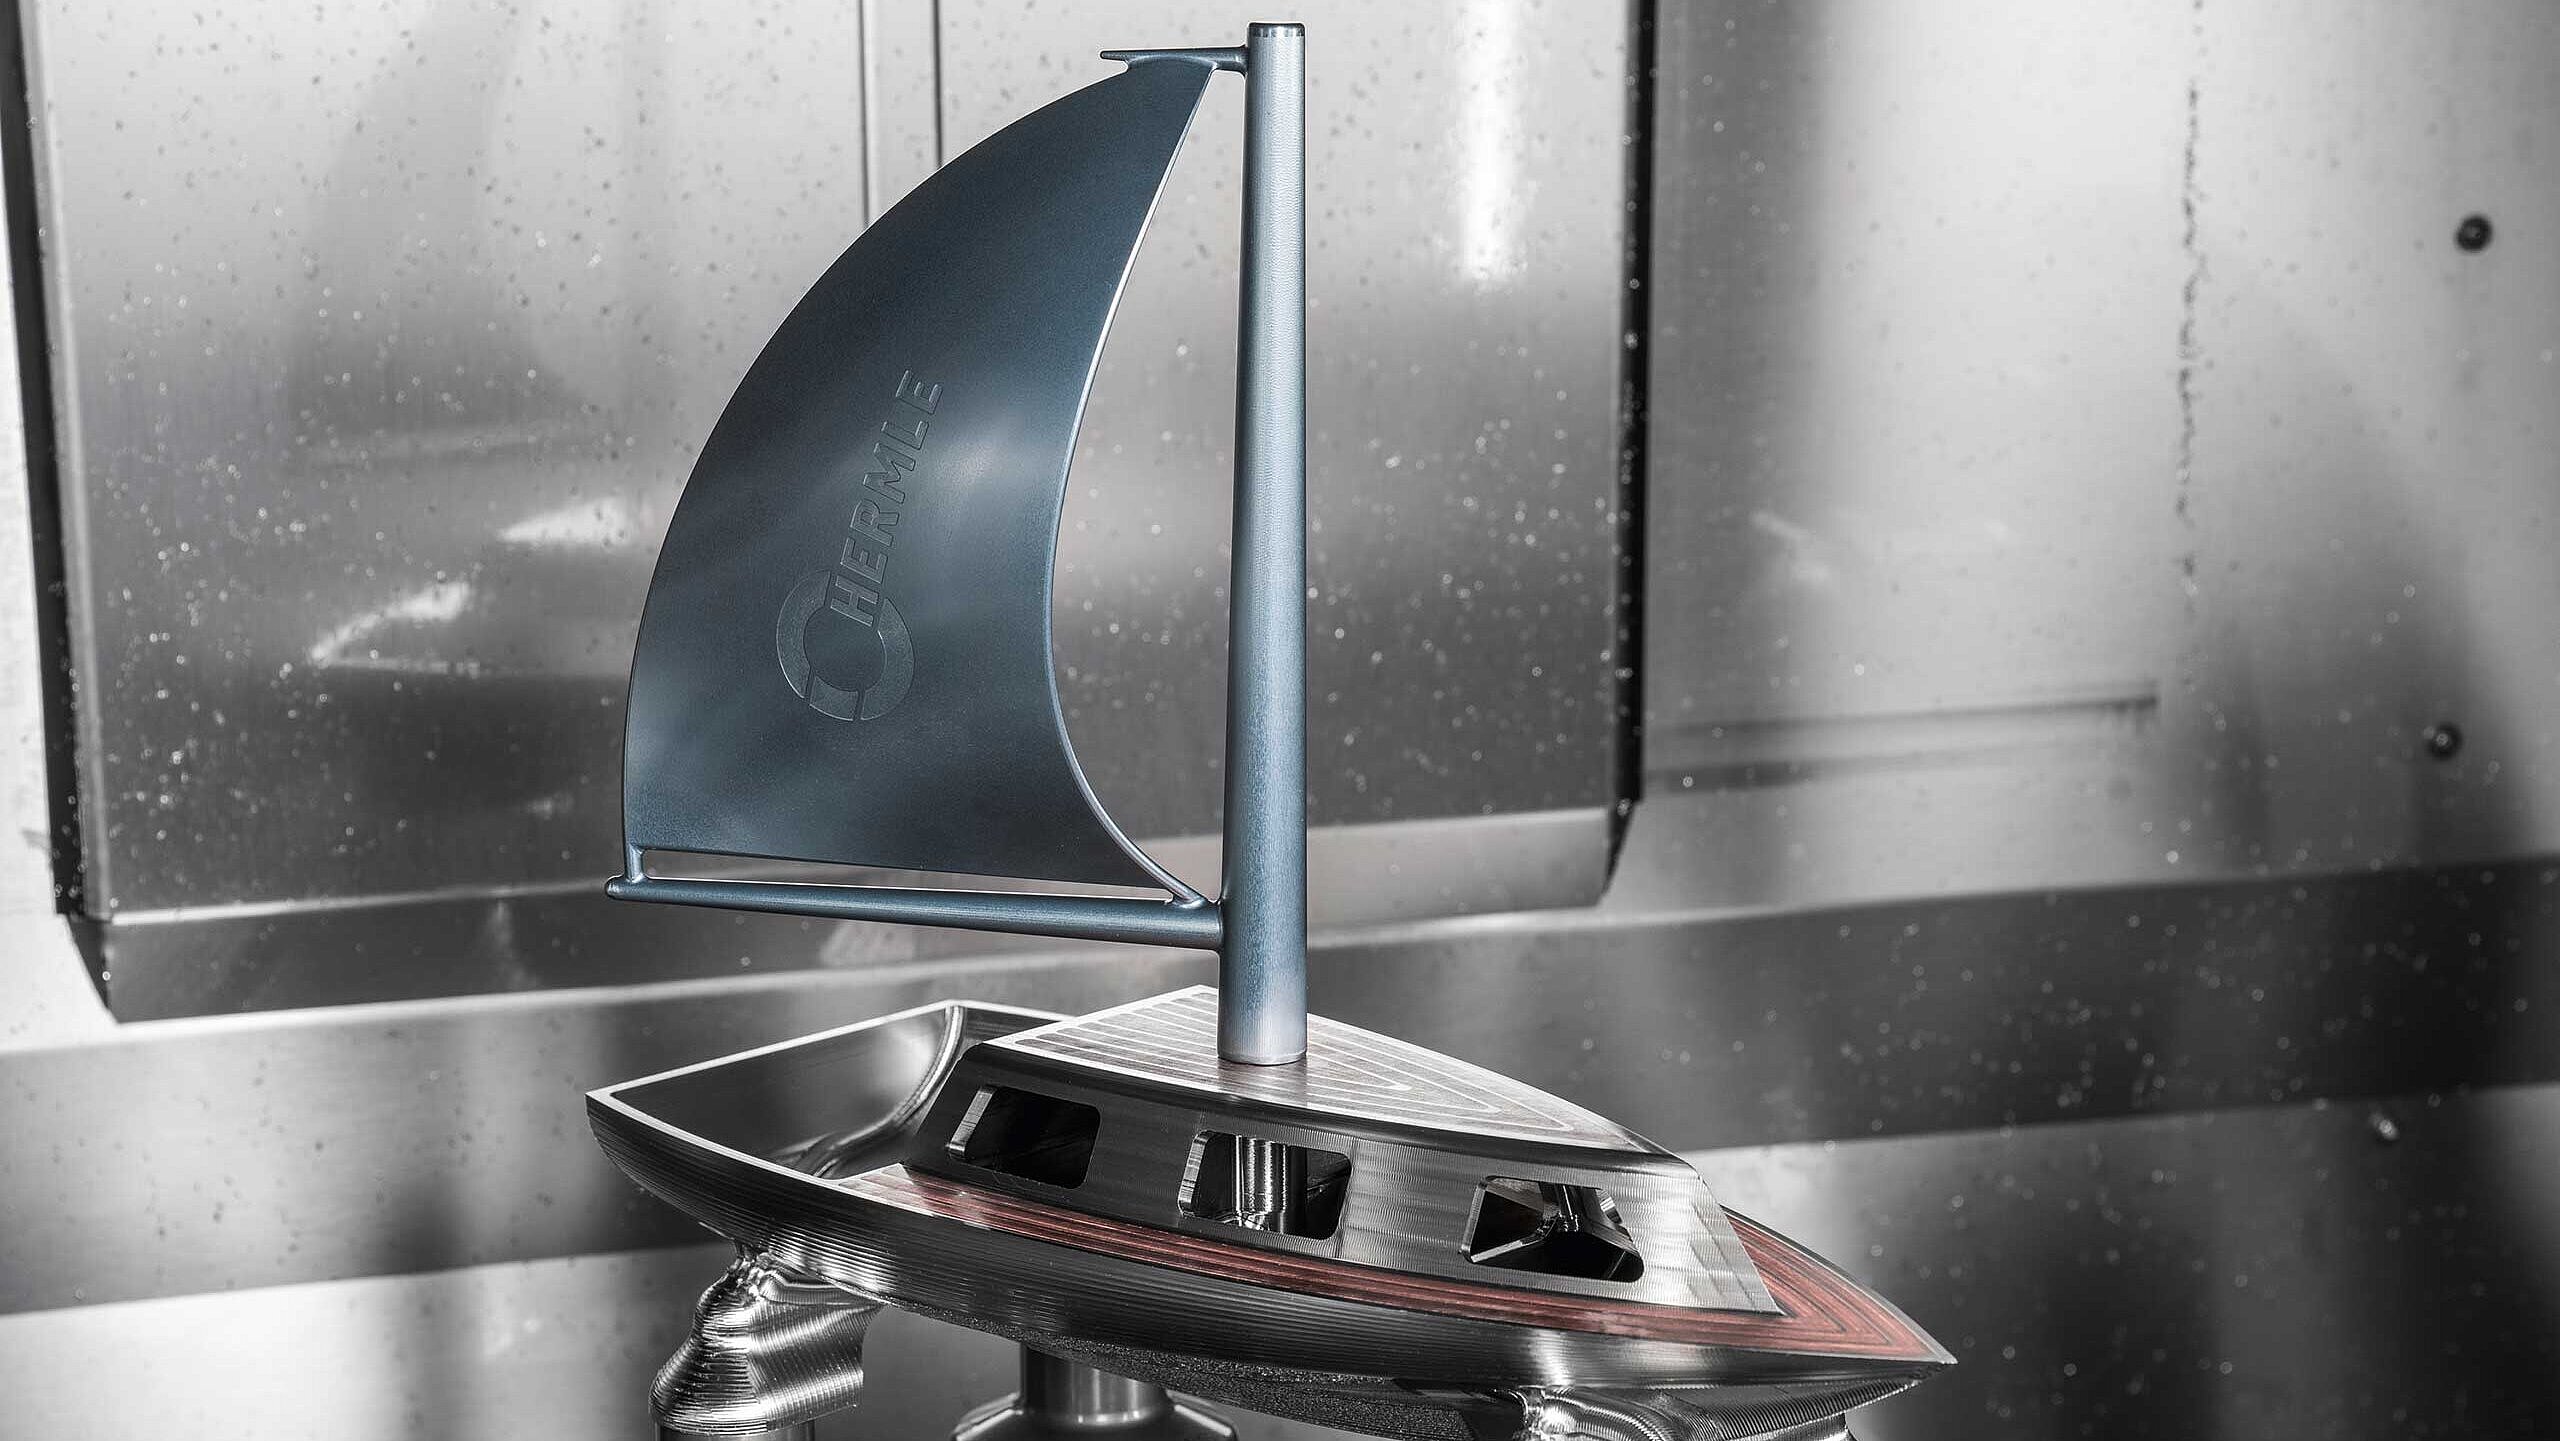 Modell eines Segelboots welches mit Hilfe einer Hermle-Maschine gefertigt wurde